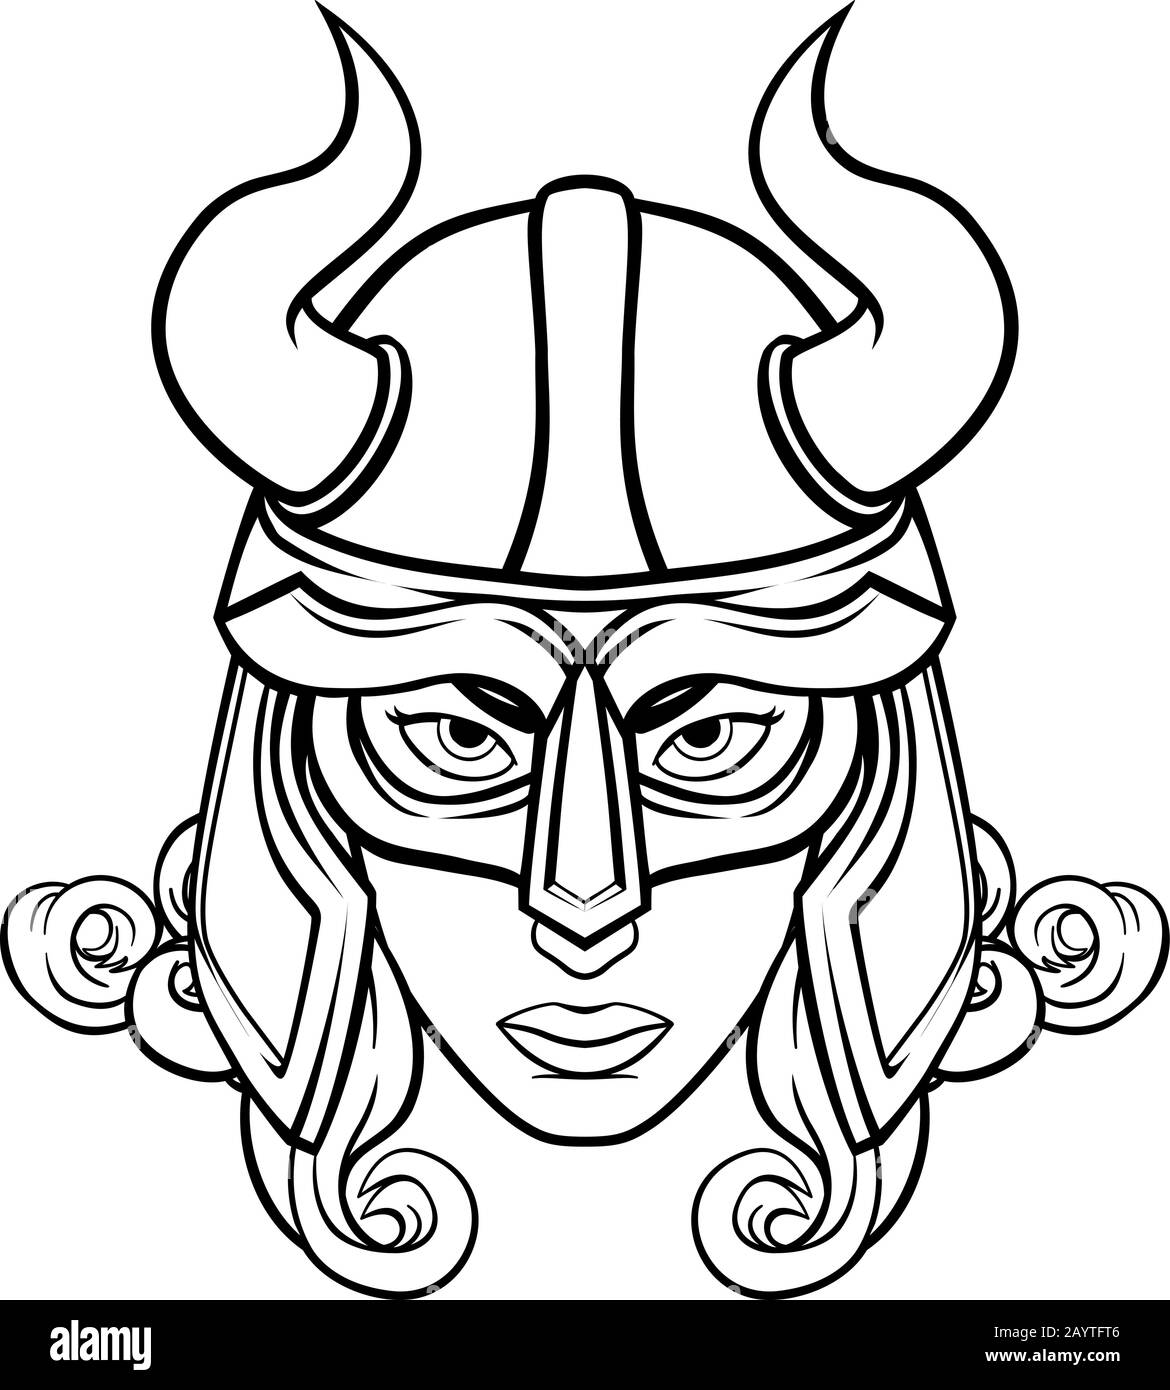 Guerrière Viking Mascot Illustration de Vecteur